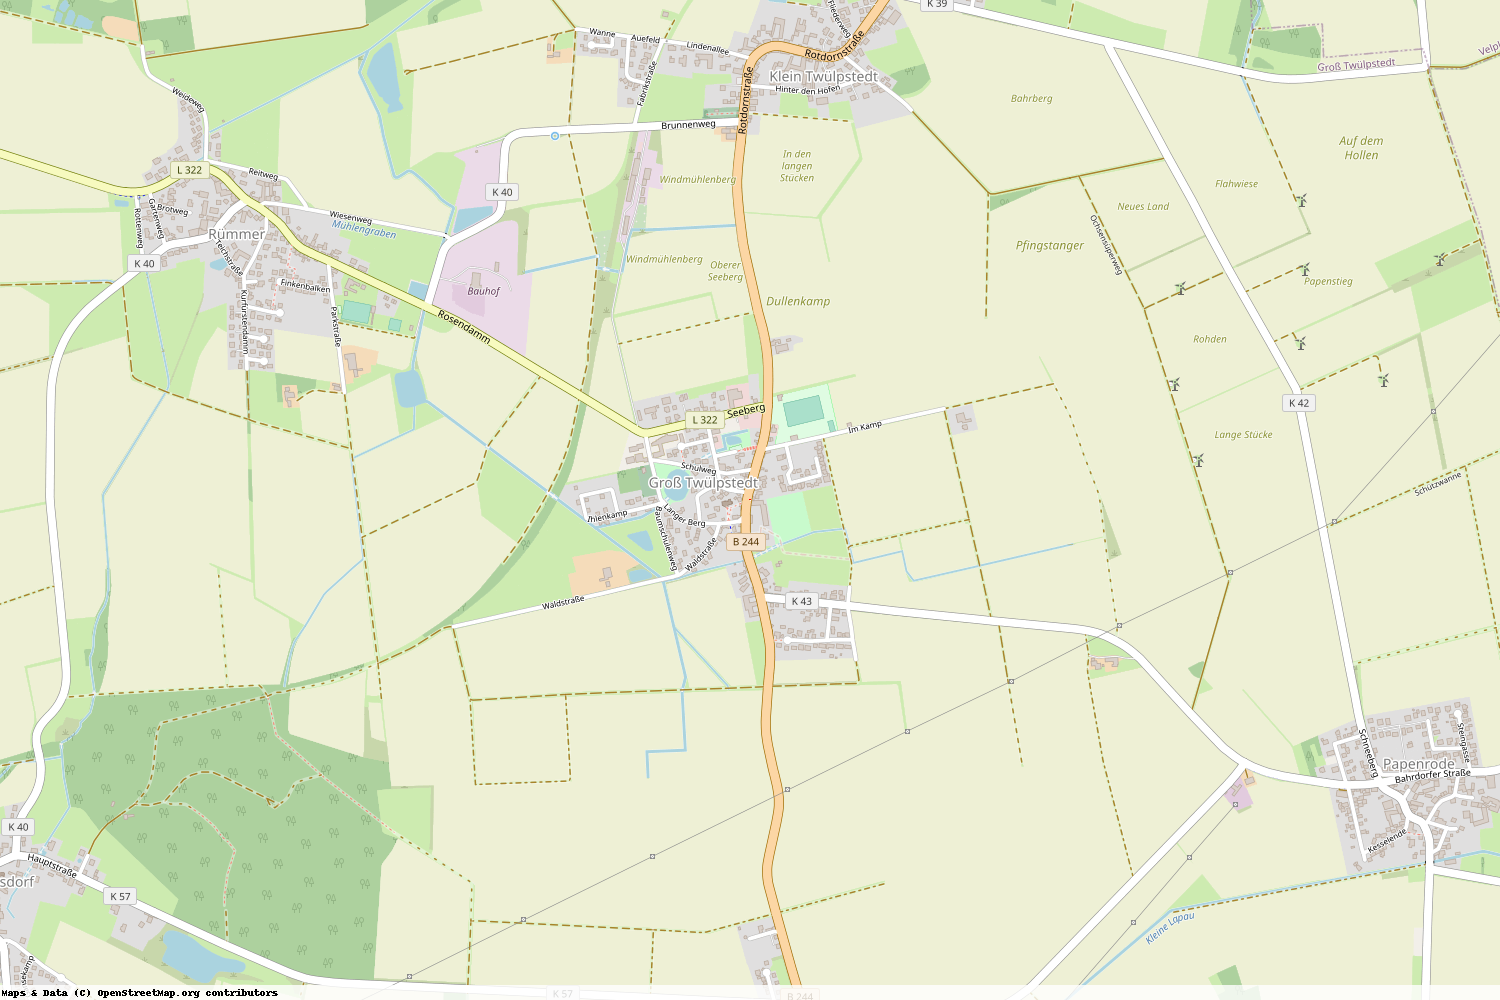 Ist gerade Stromausfall in Niedersachsen - Helmstedt - Groß Twülpstedt?